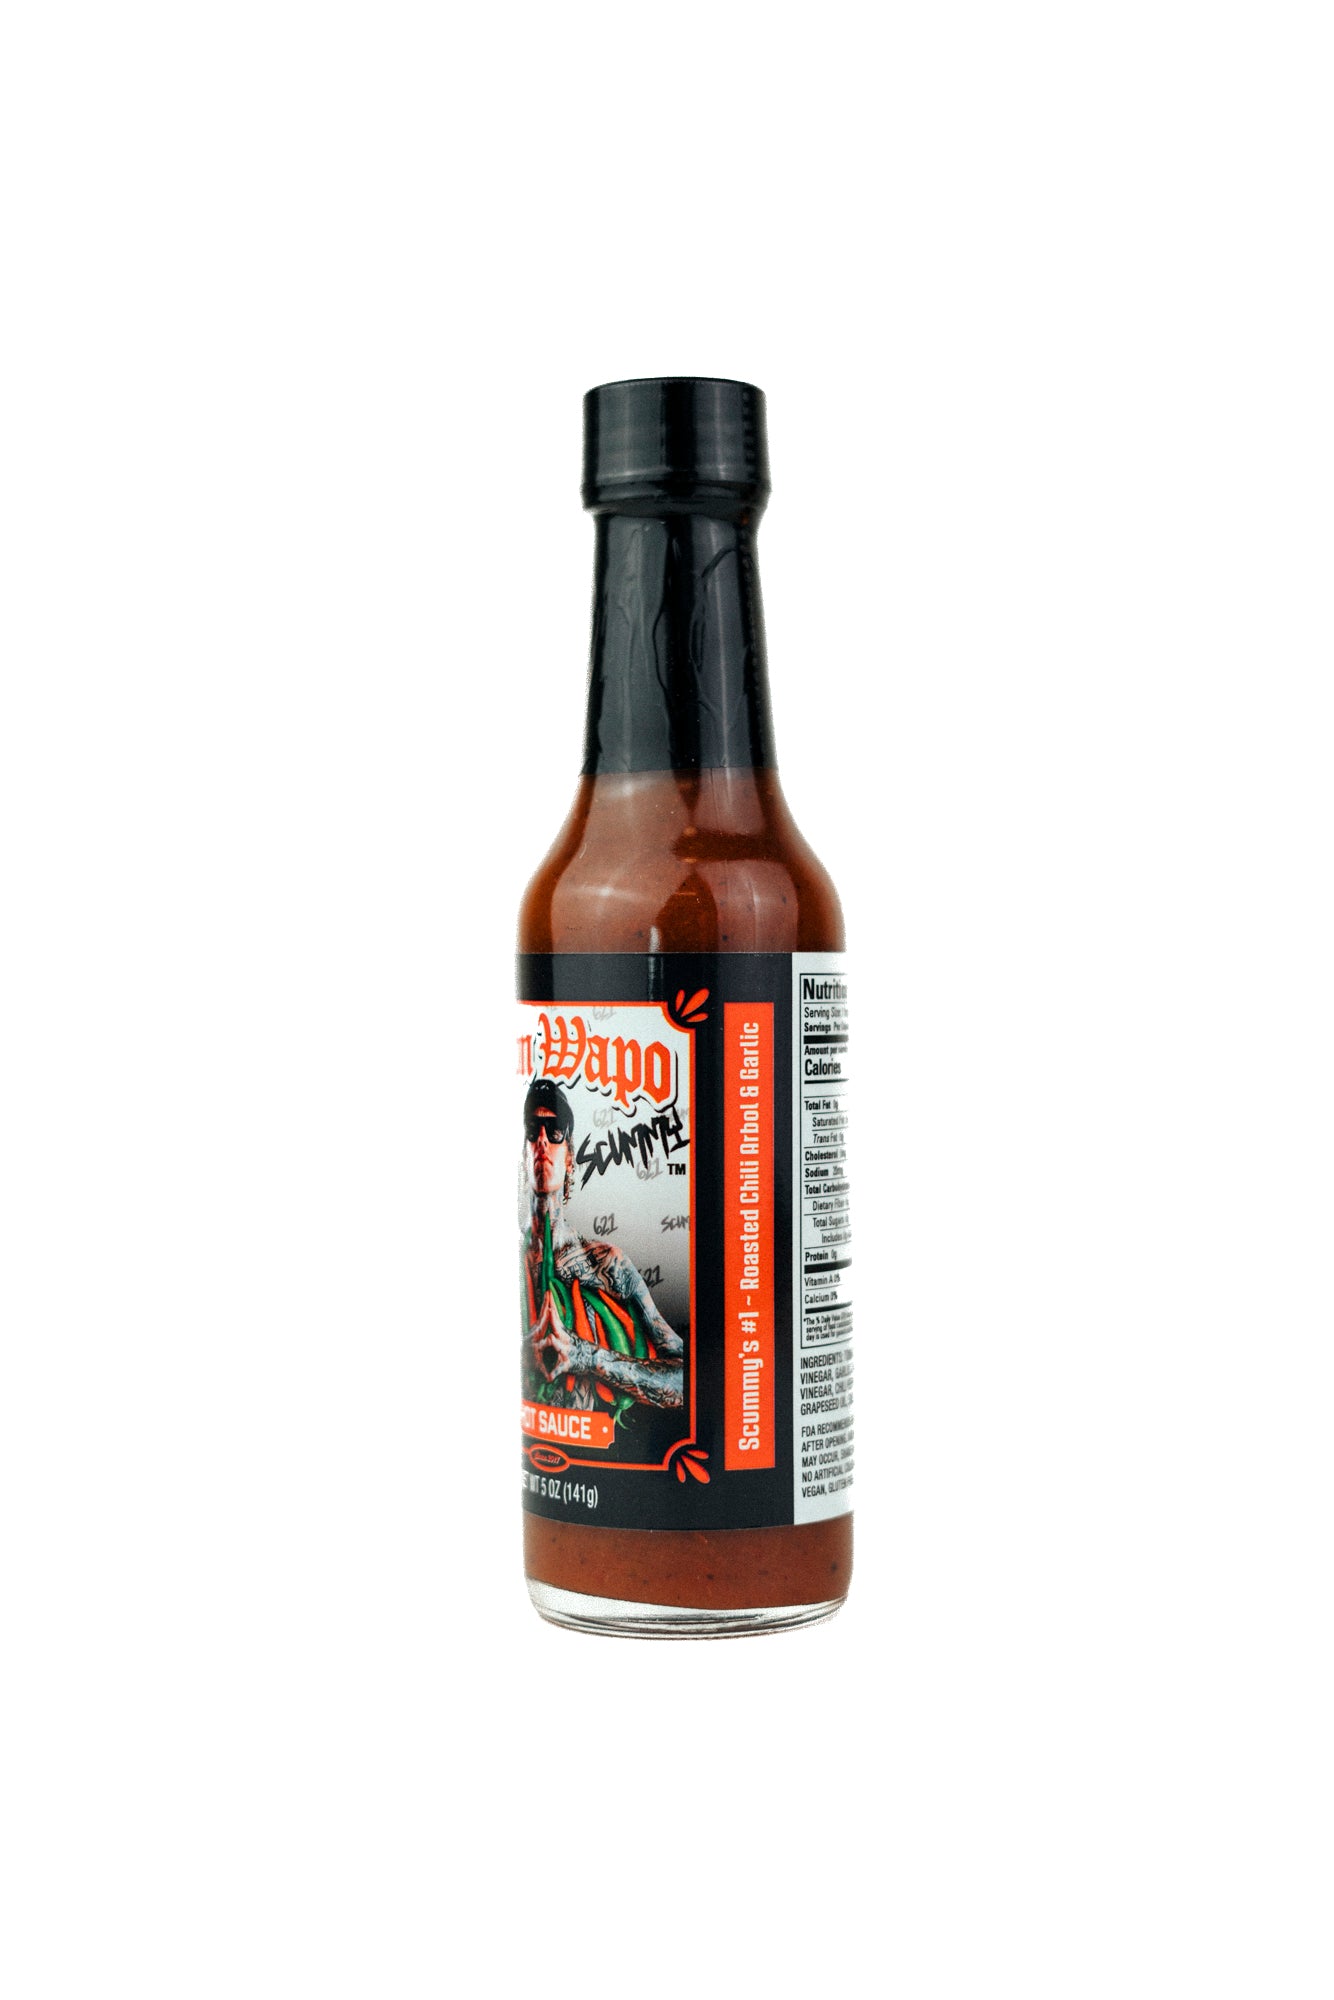 Colin Scummy Morrison Limited Edition La Primera Collab Don Wapo Hot Sauce